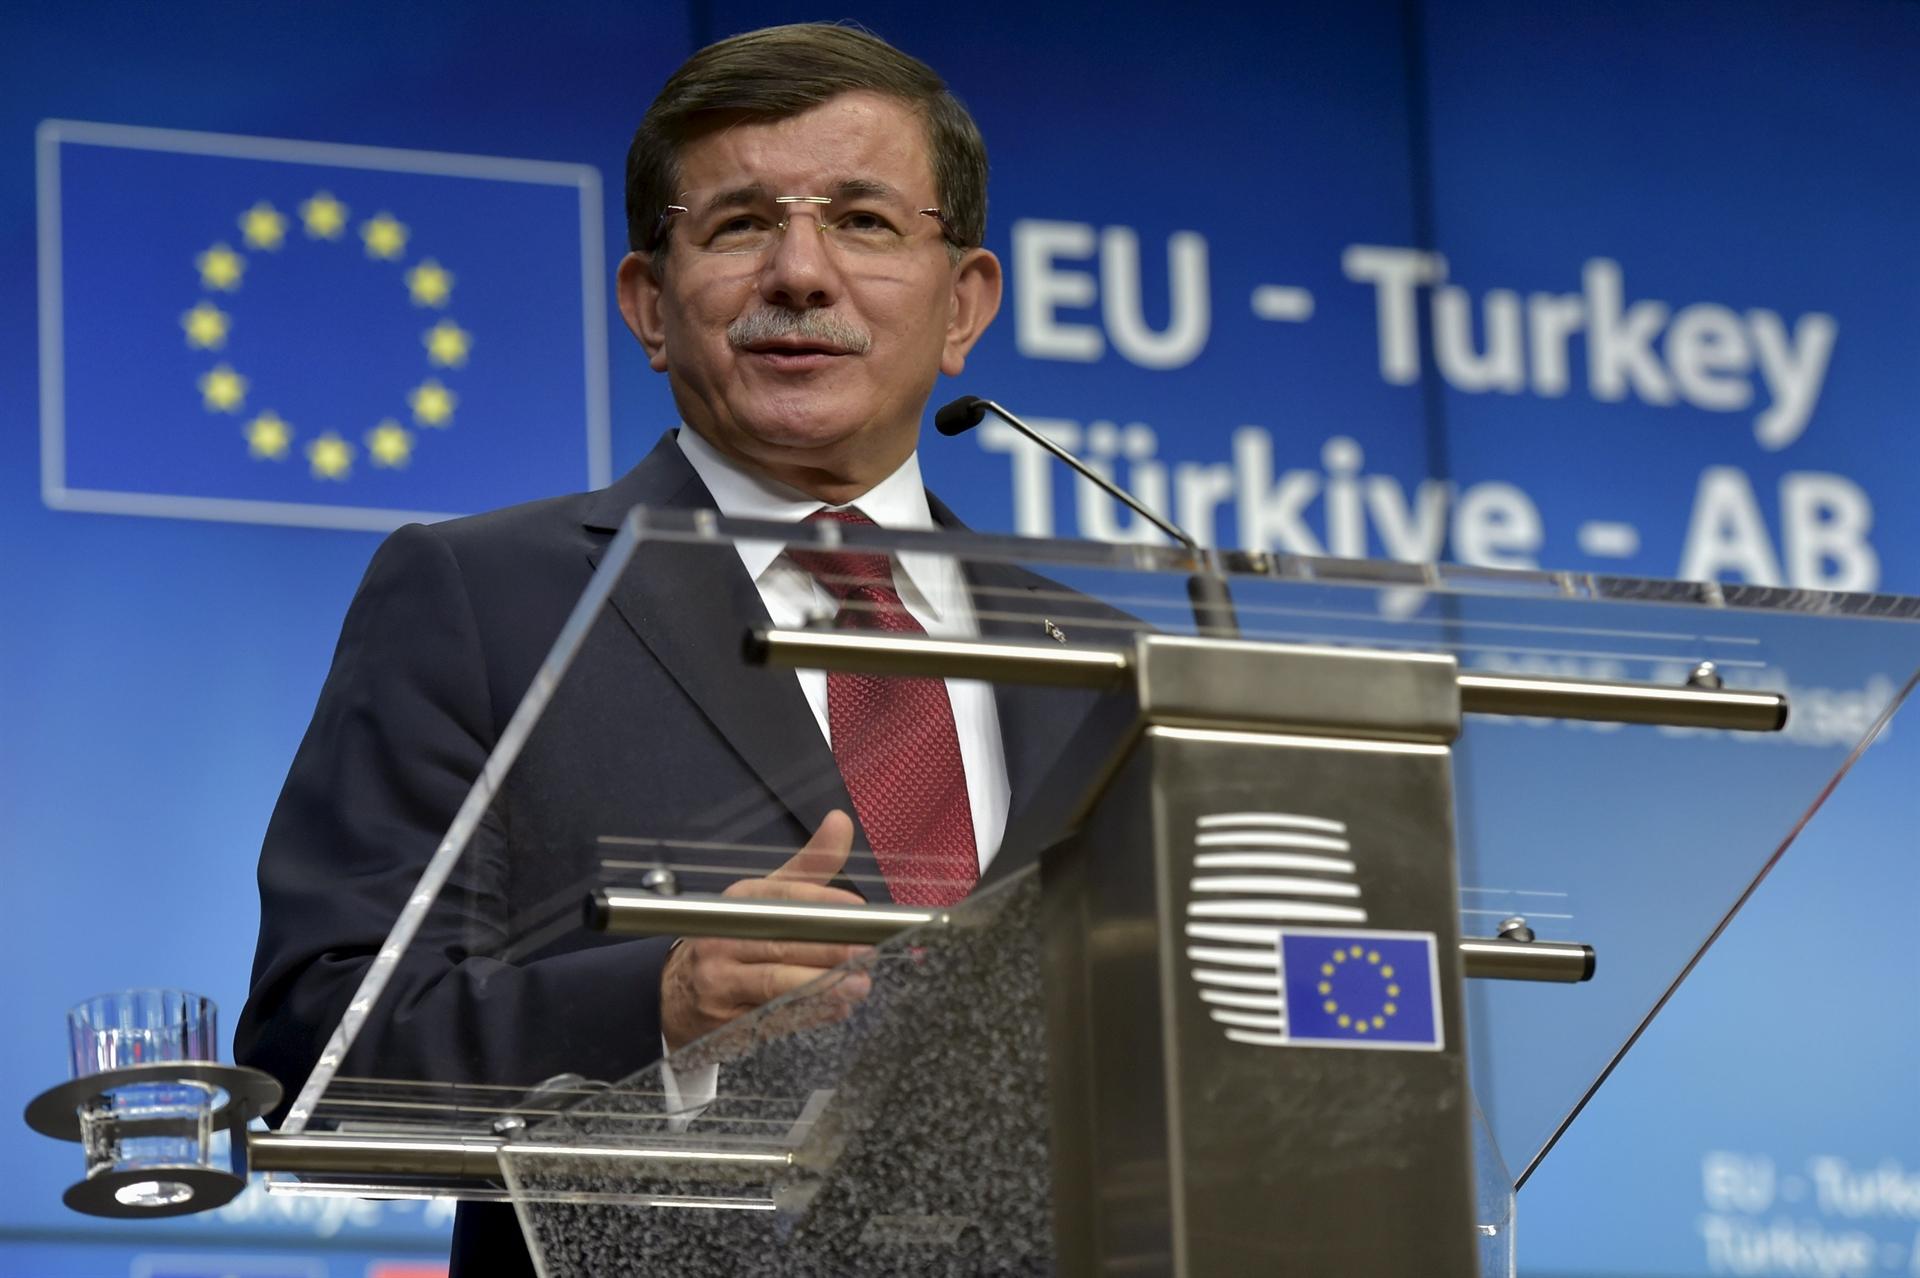 EU paktiert mit der Türkei für Krieg, Ausbeutung und Kontrolle auf Kosten der Geflüchteten